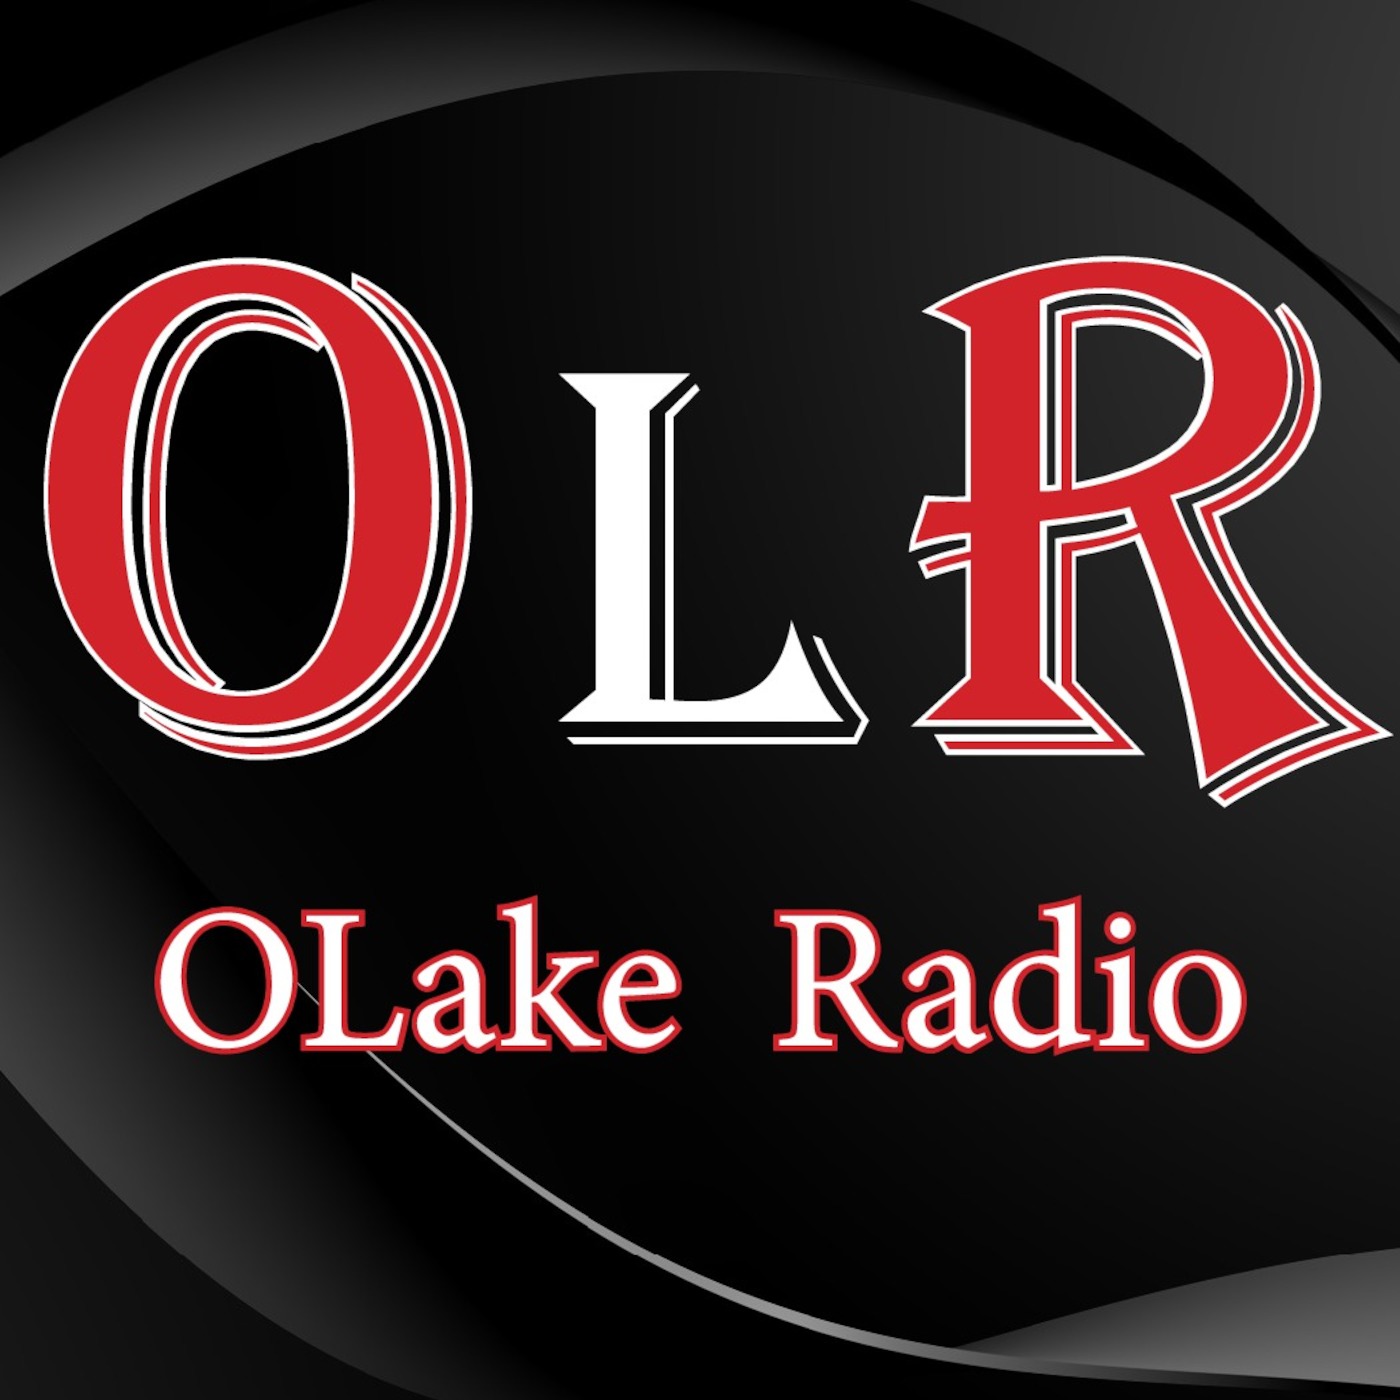 OLake Radio